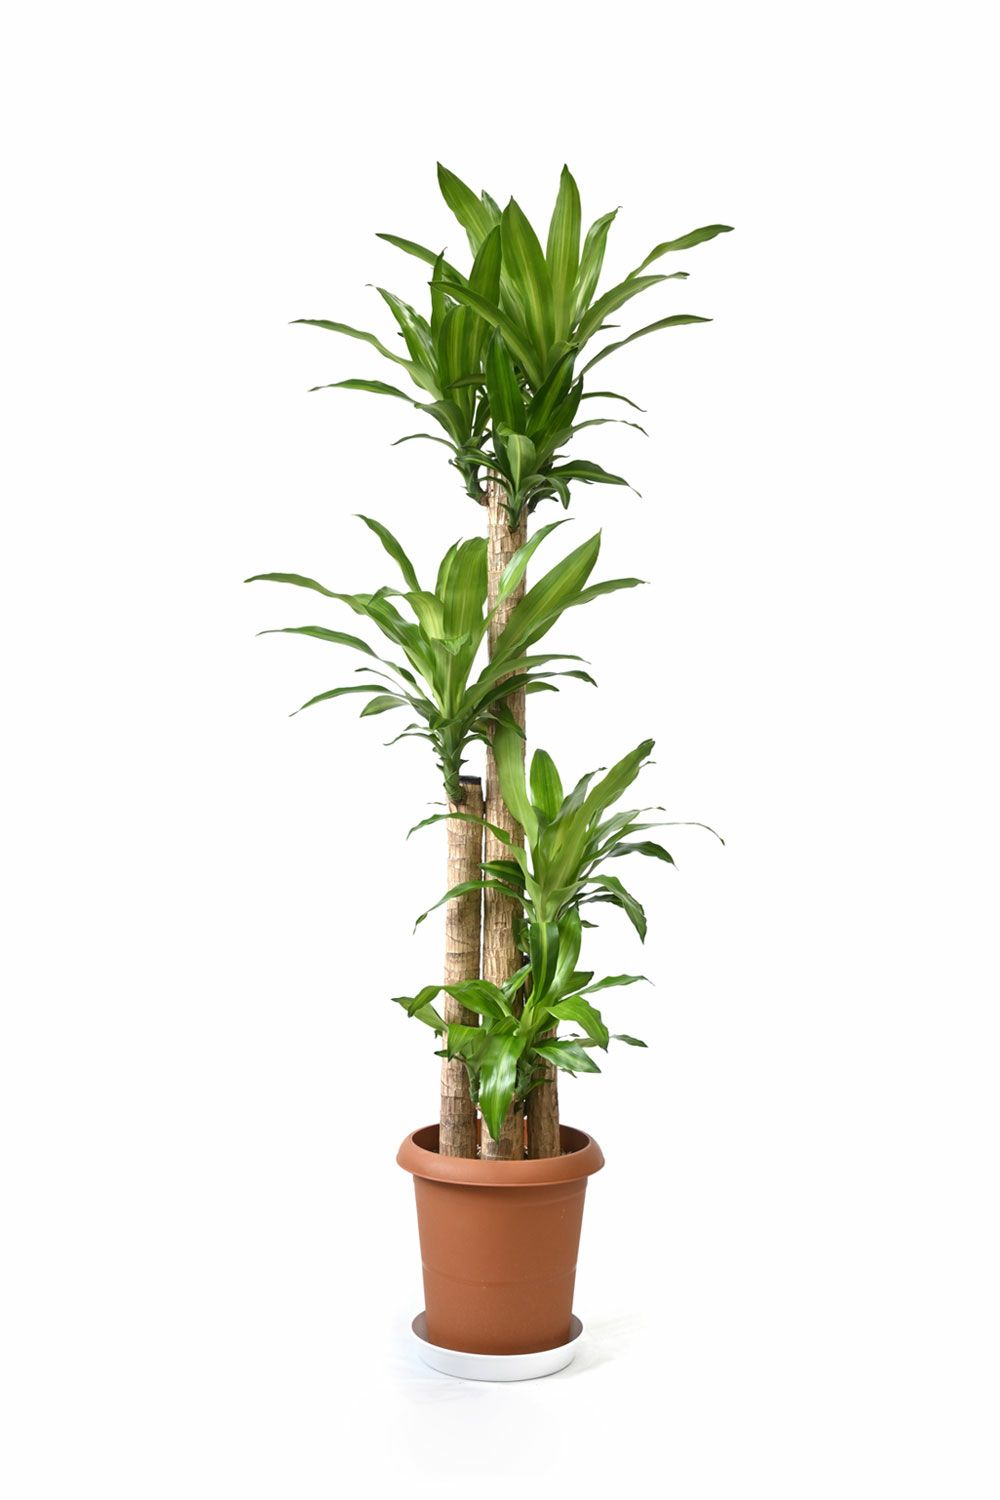 幸福の木 ドラセナ・マッサンゲアナ 10号鉢 観葉植物